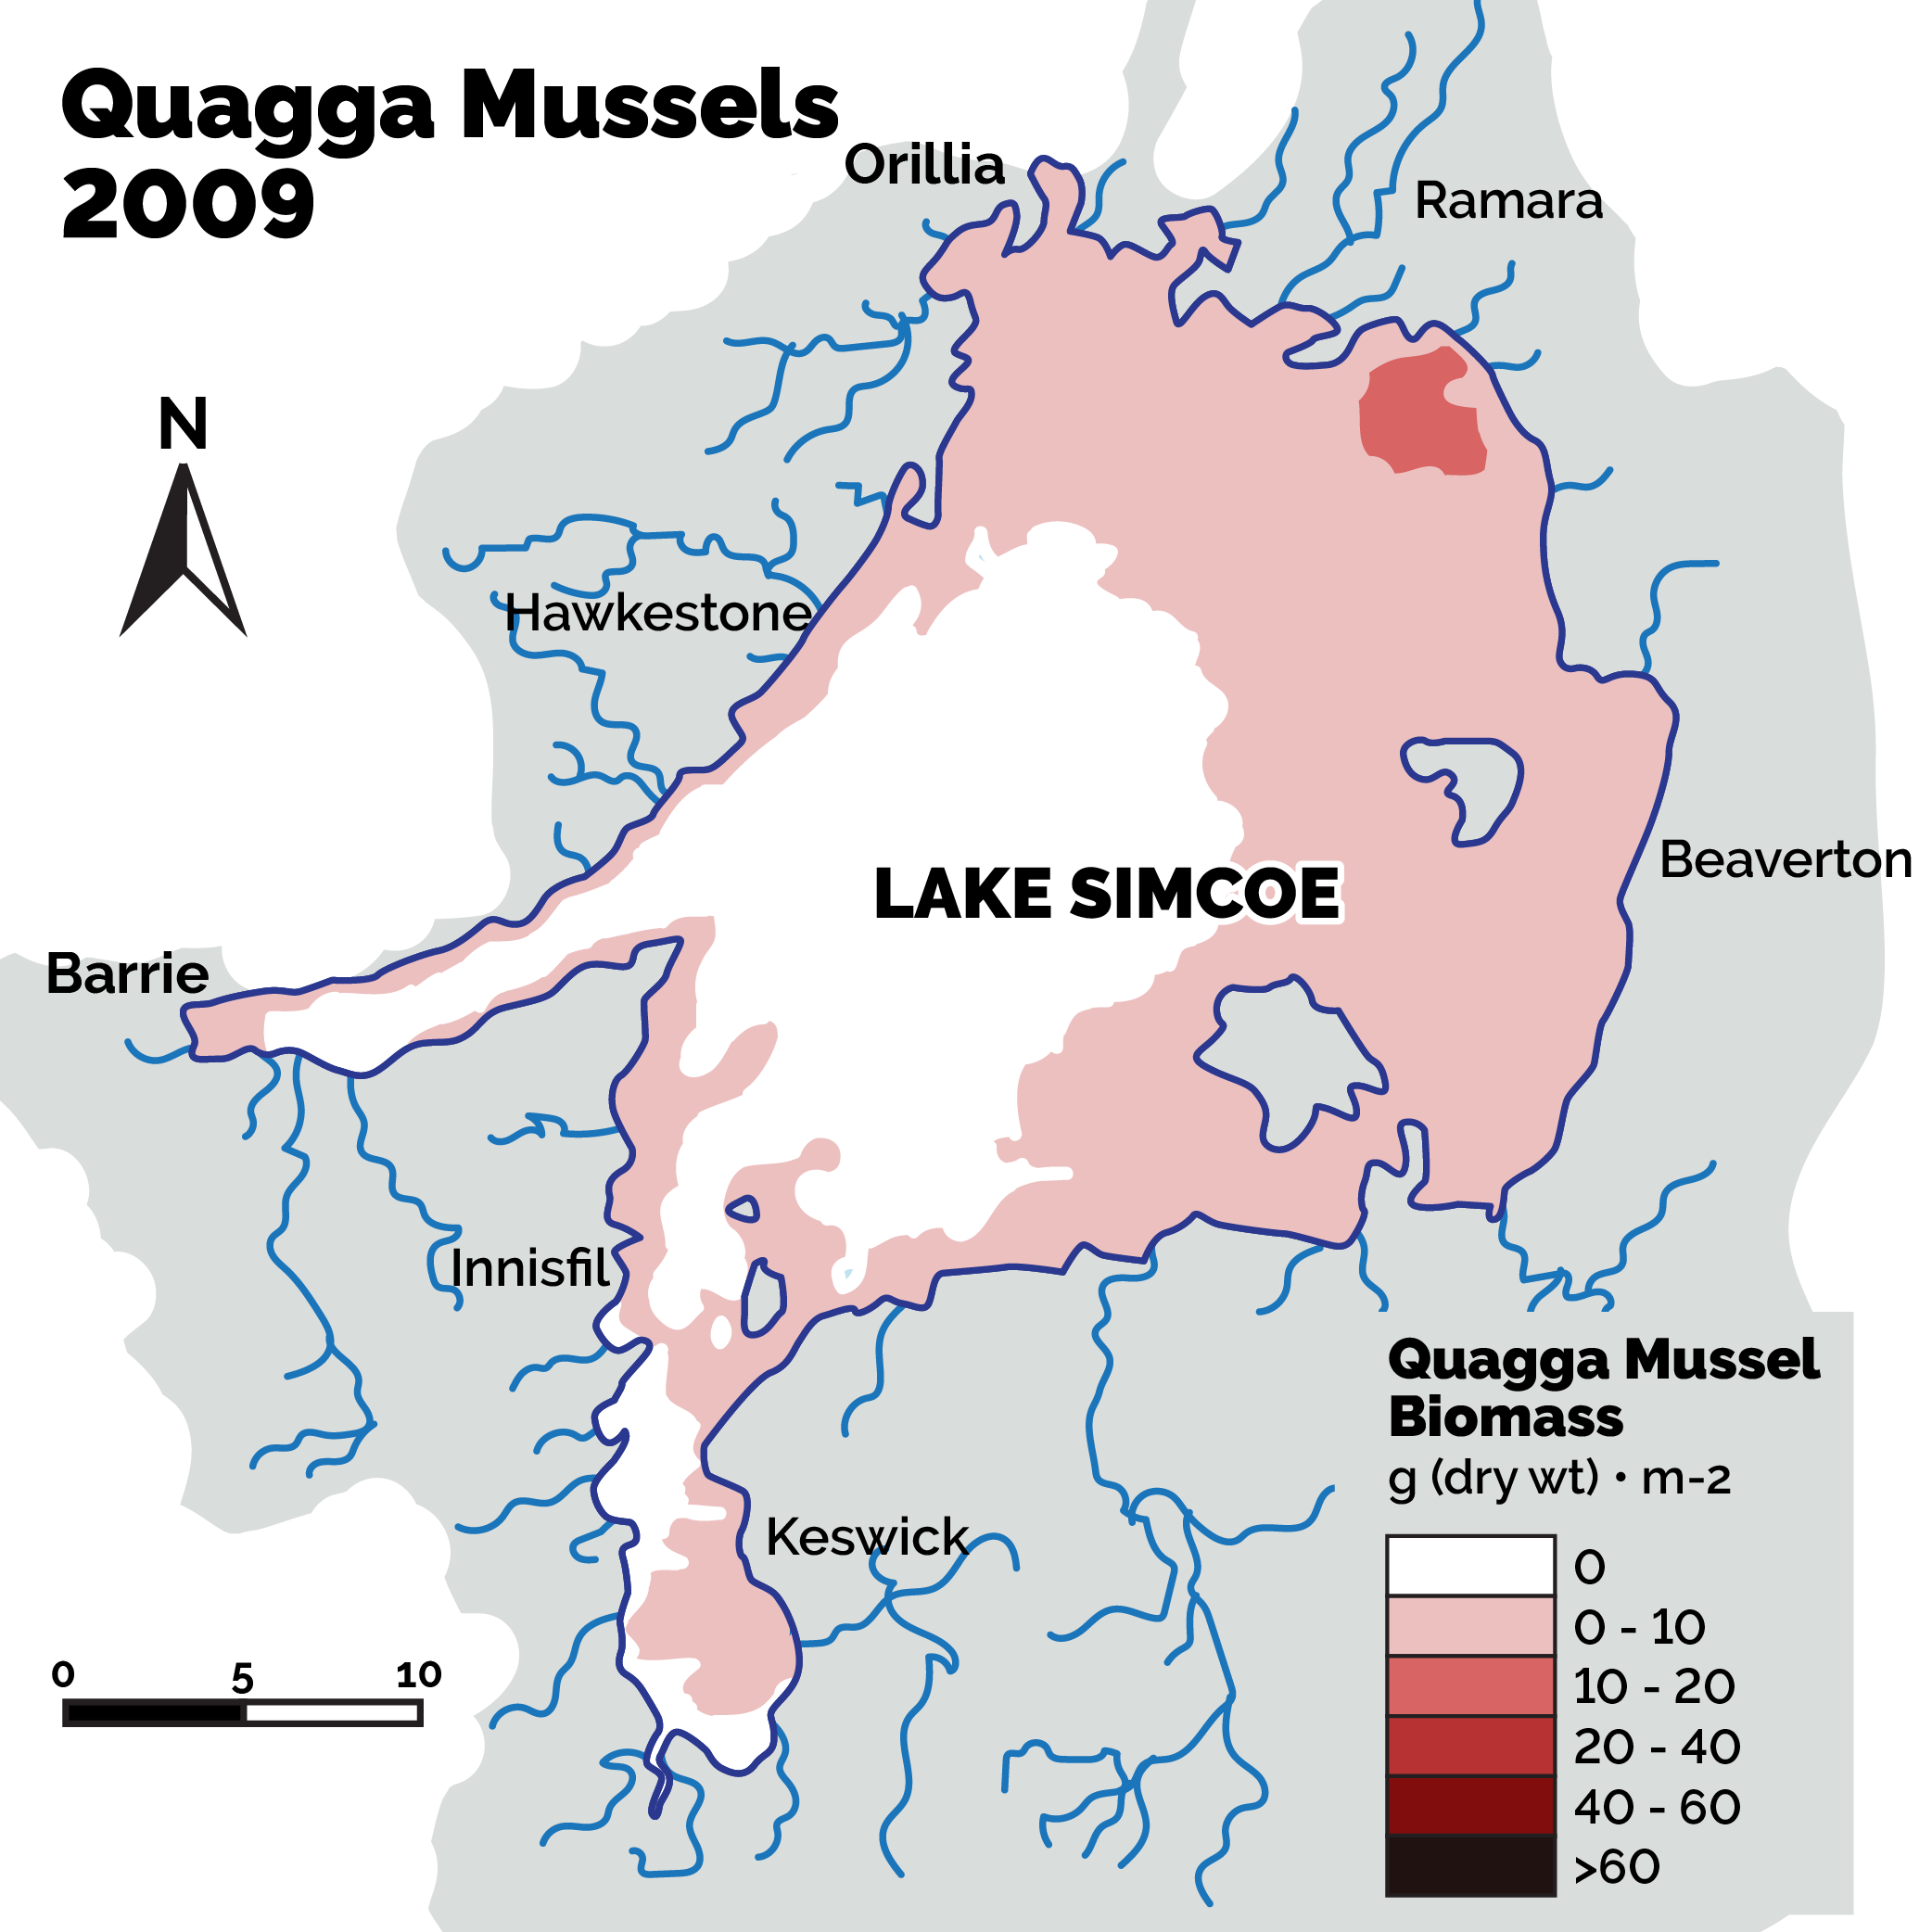 Quagga mussels in 2009